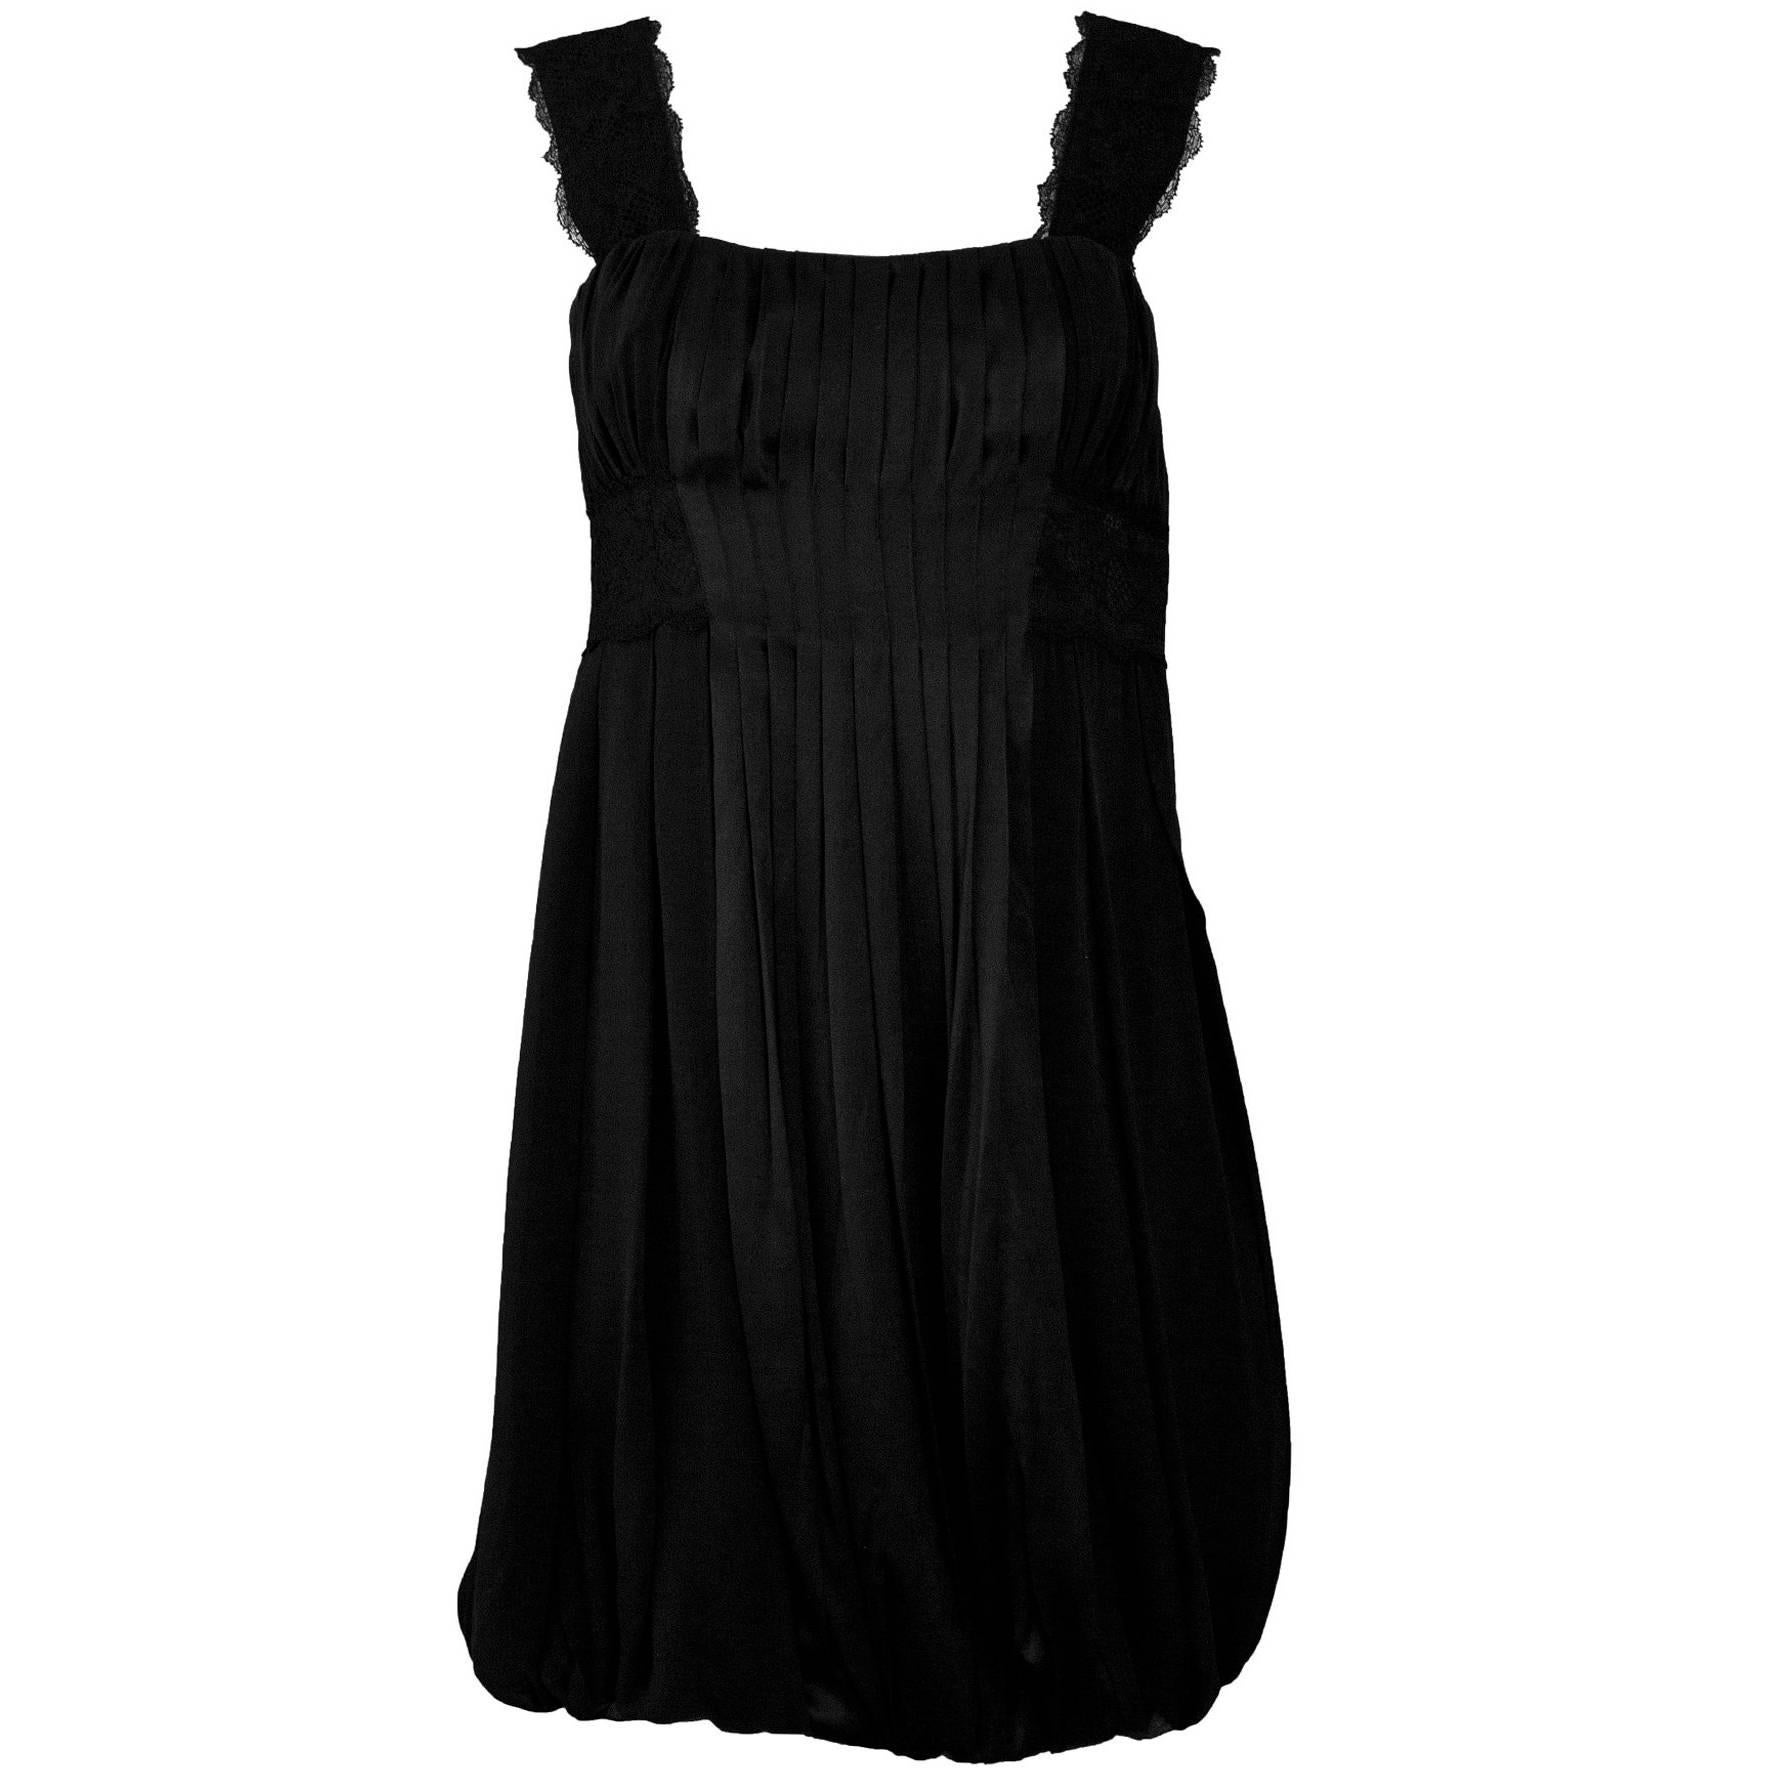 Diane von Furstenberg Black Silk Pleated Dress Sz 4